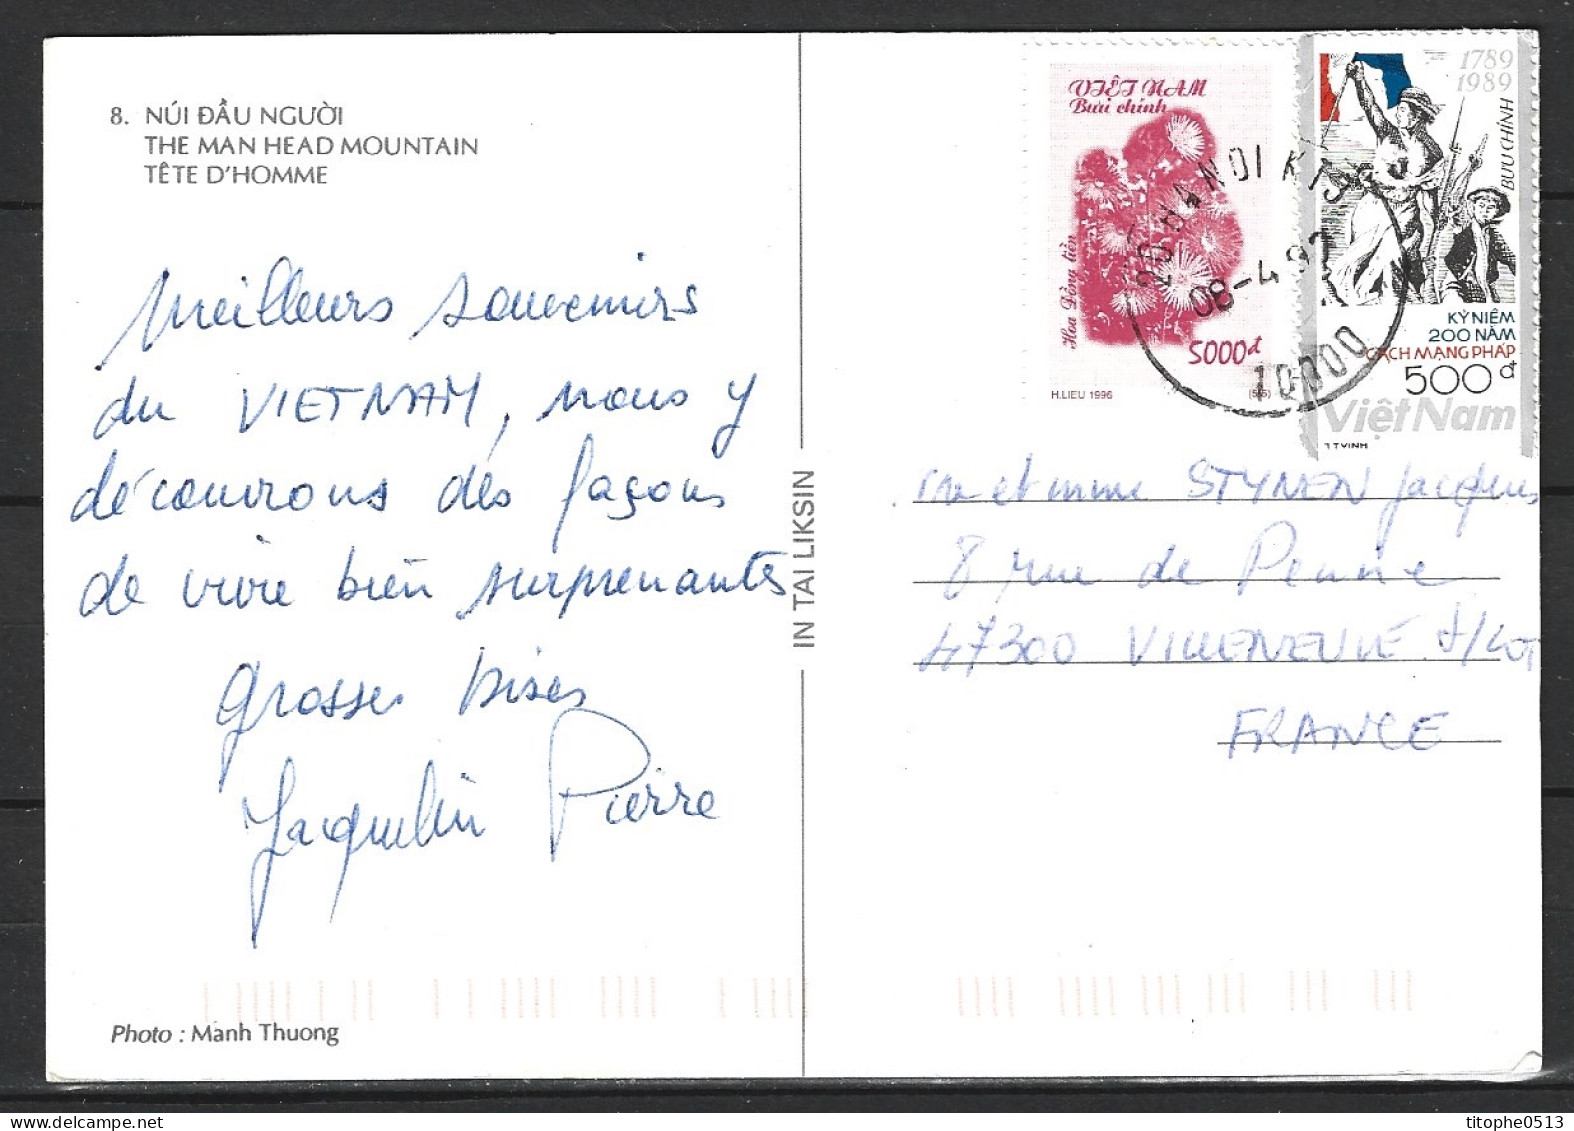 VIETNAM. N°988 De 1989 Sur Carte Postale Ayant Circulé. Liberté Guidant Le Peuple. - Revolución Francesa